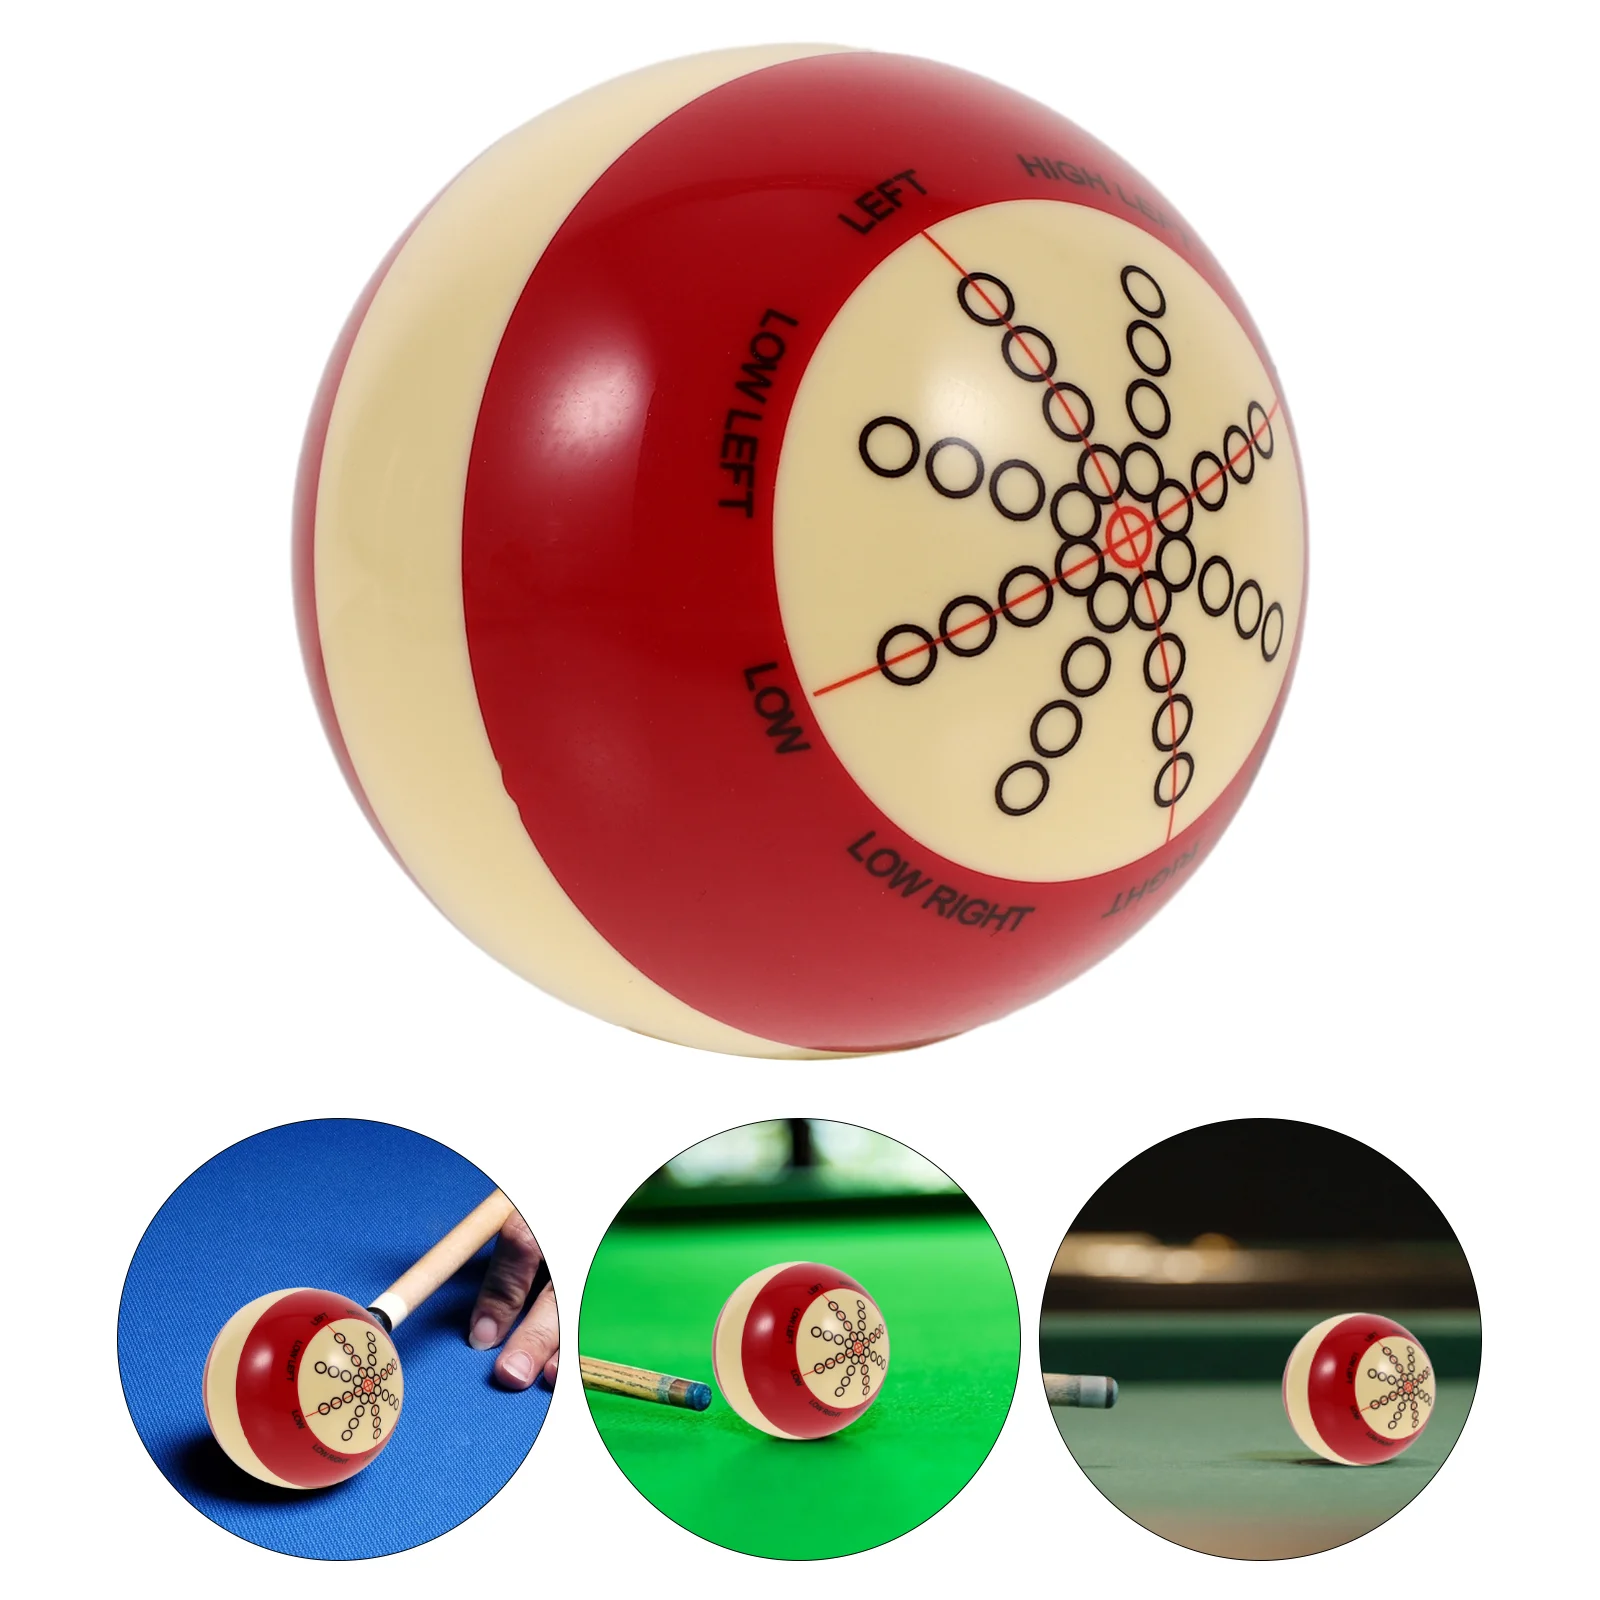 

Основной бильярдный тренировочный красный точечный бильярдный шар, аксессуары для снукера из синтетической смолы, бильярдные шары